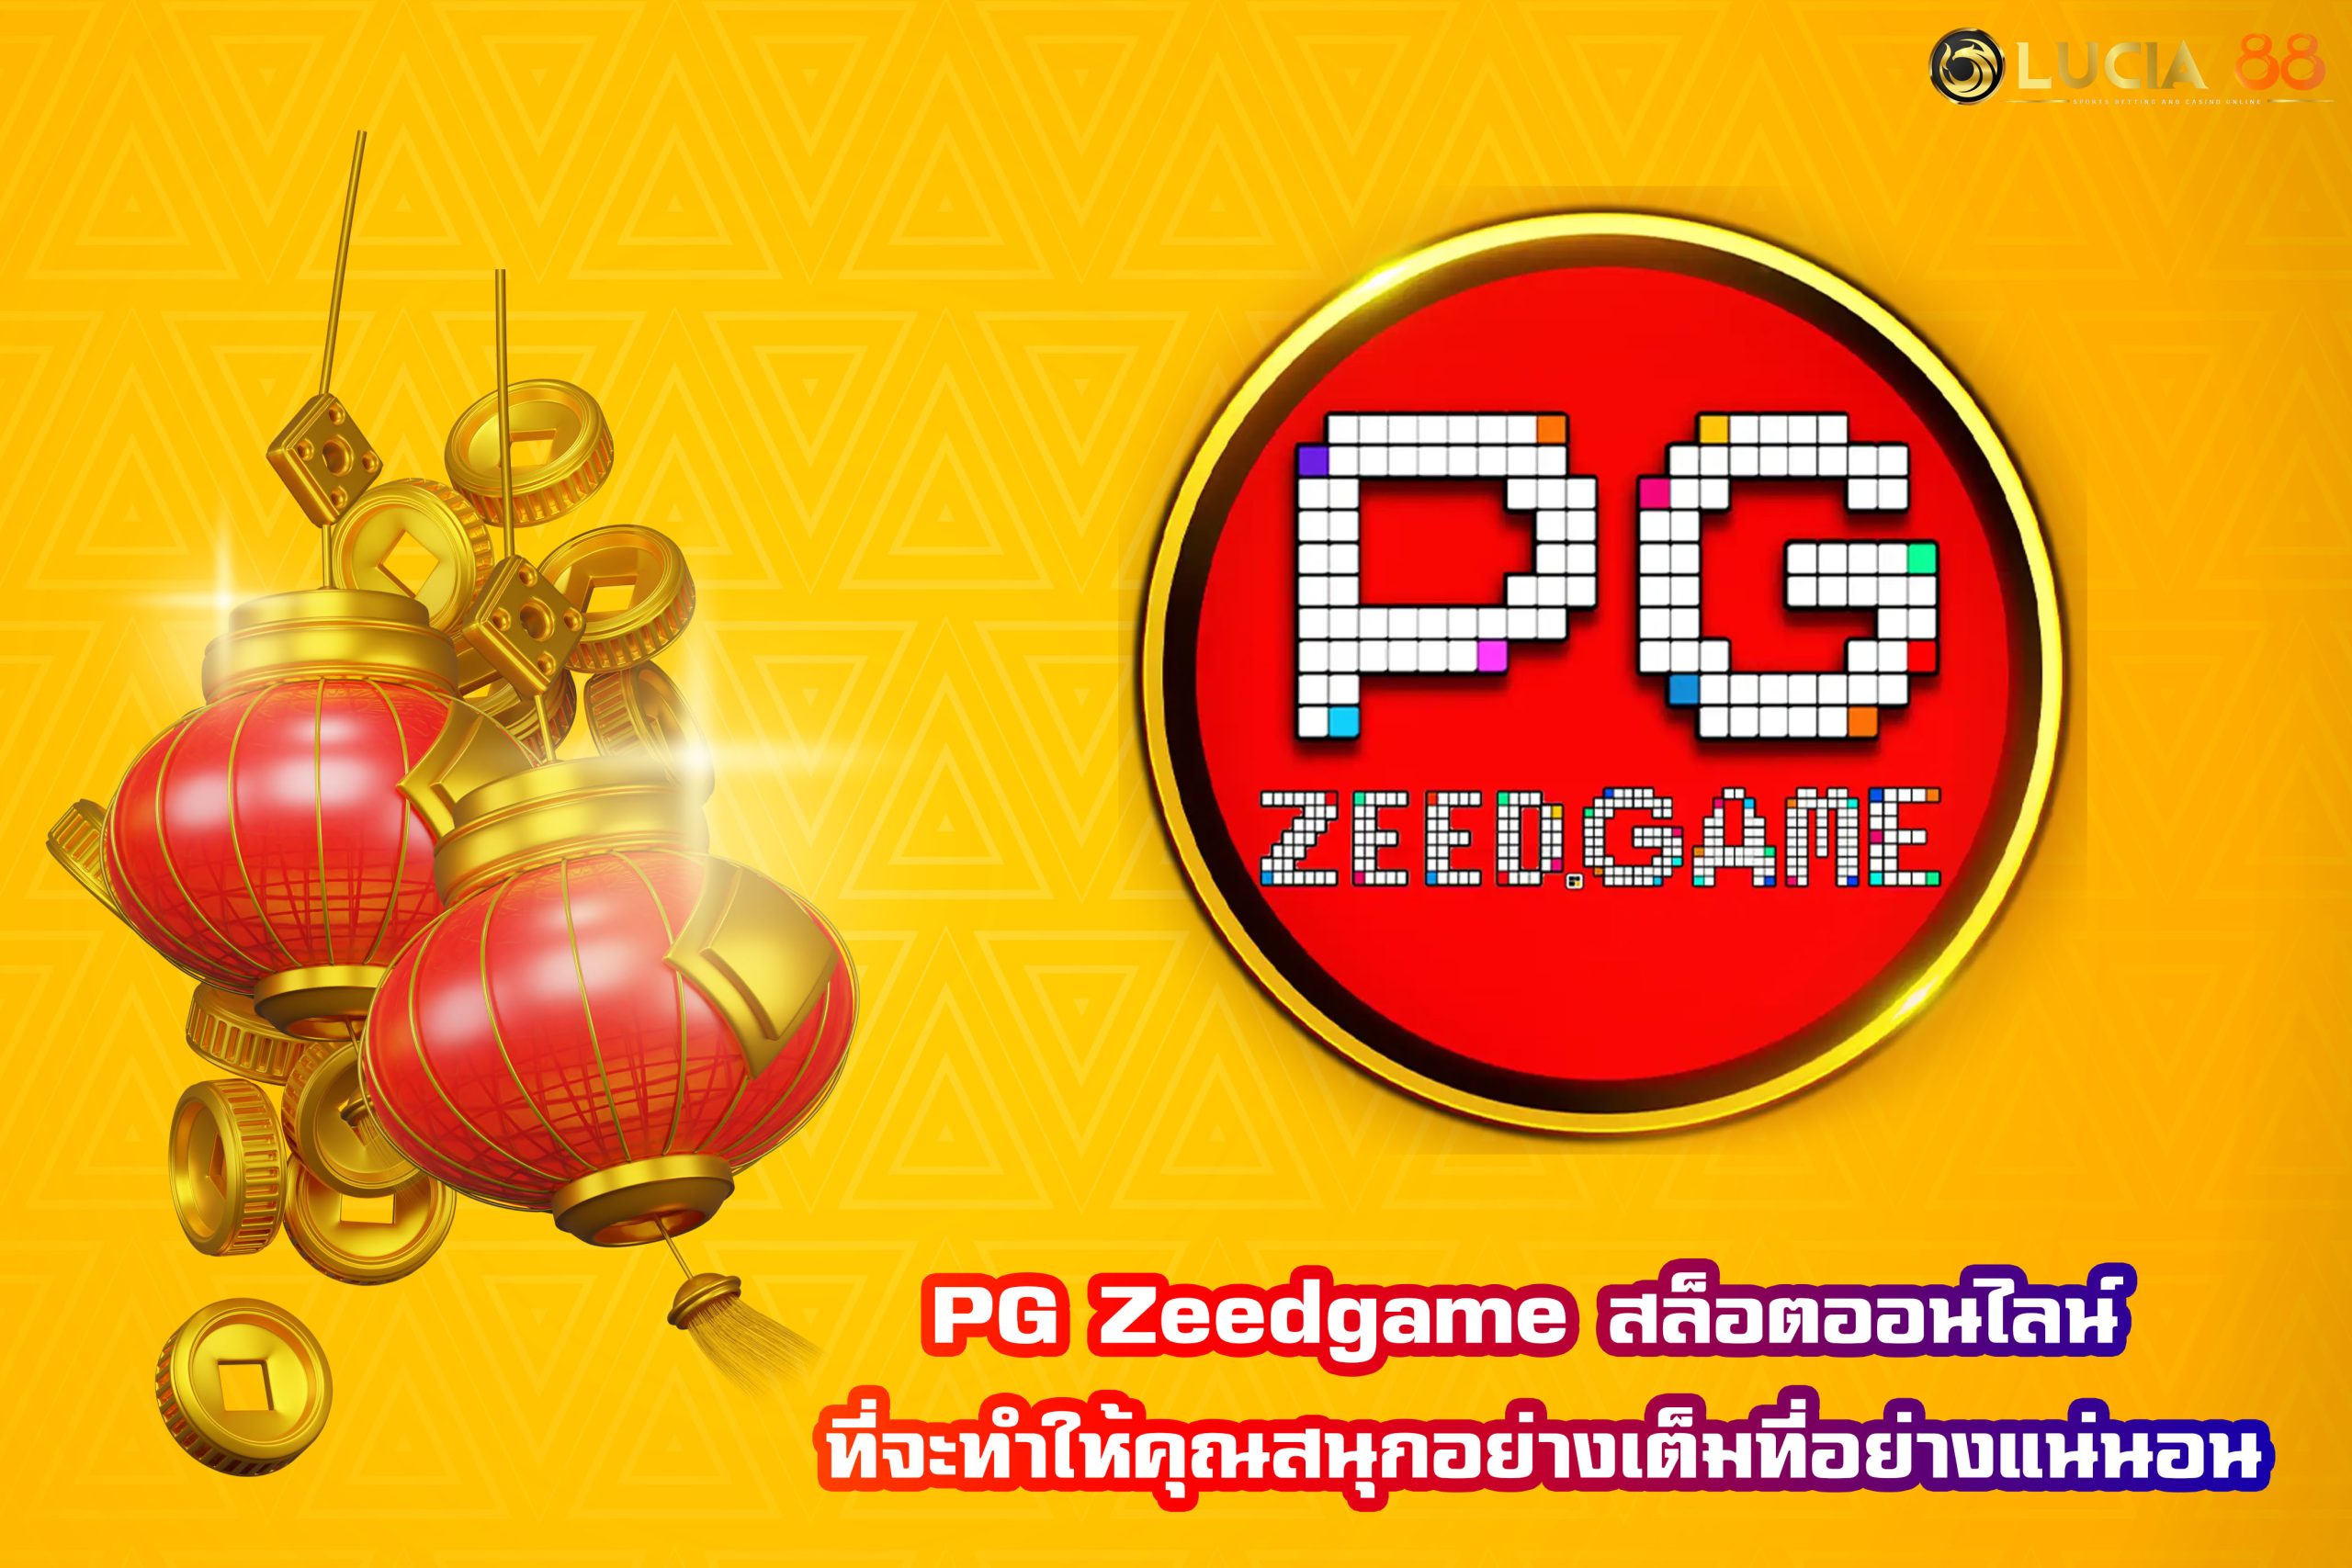 PG Zeedgame สล็อตออนไลน์ ที่จะทำให้คุณสนุกอย่างเต็มที่อย่างแน่นอน